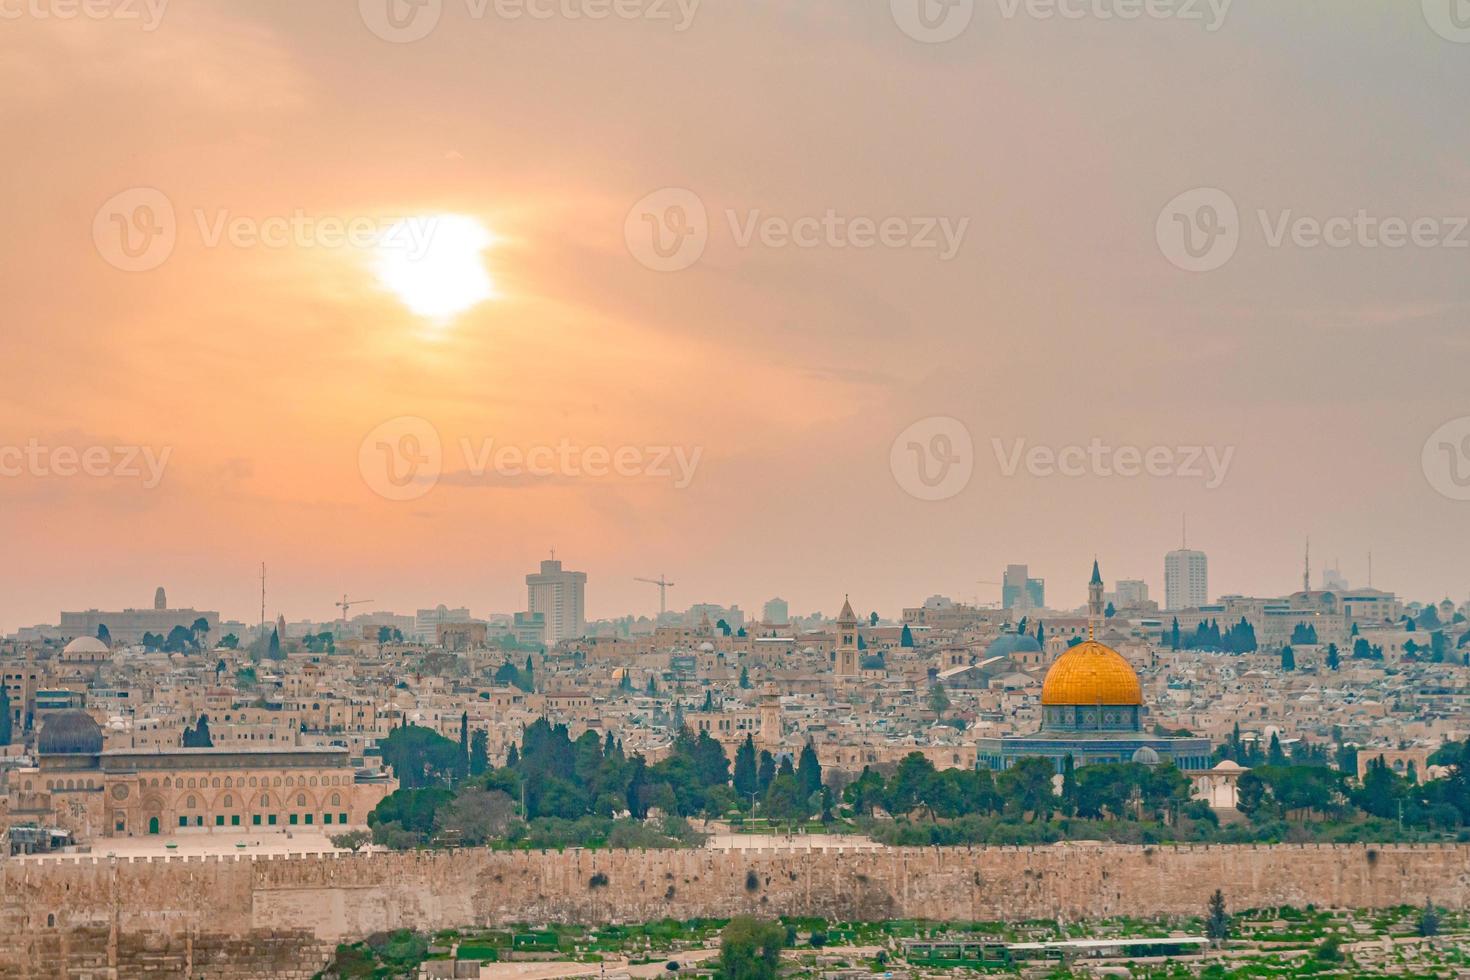 vista panoramica della città vecchia di Gerusalemme e del monte del tempio durante un drammatico tramonto colorato foto